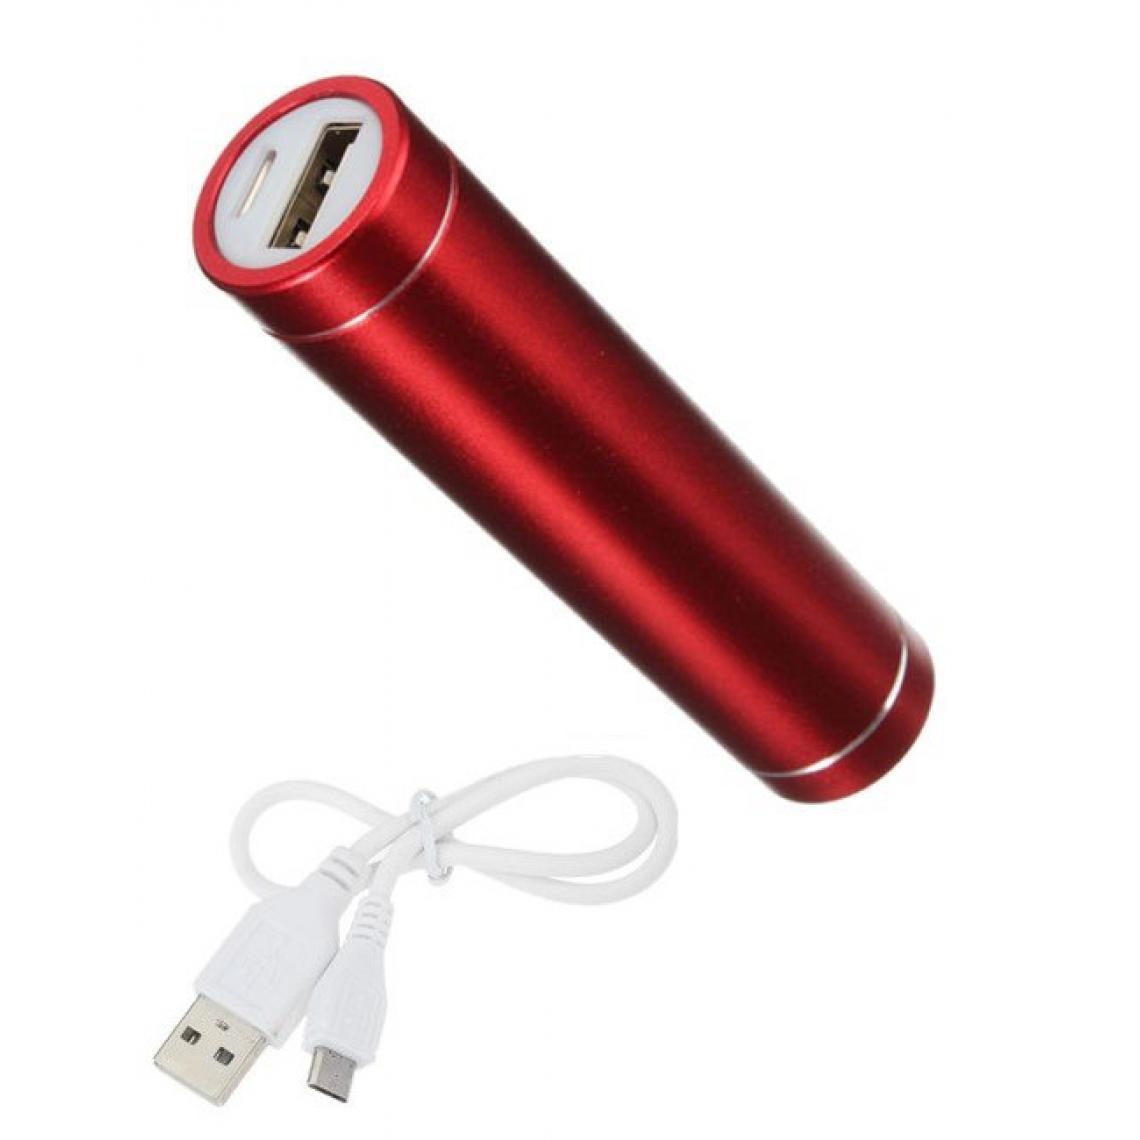 Shot - Batterie Chargeur Externe pour "SAMSUNG Galaxy A01" Power Bank 2600mAh avec Cable USB/Mirco USB Secours Telephon (ROUGE) - Chargeur secteur téléphone